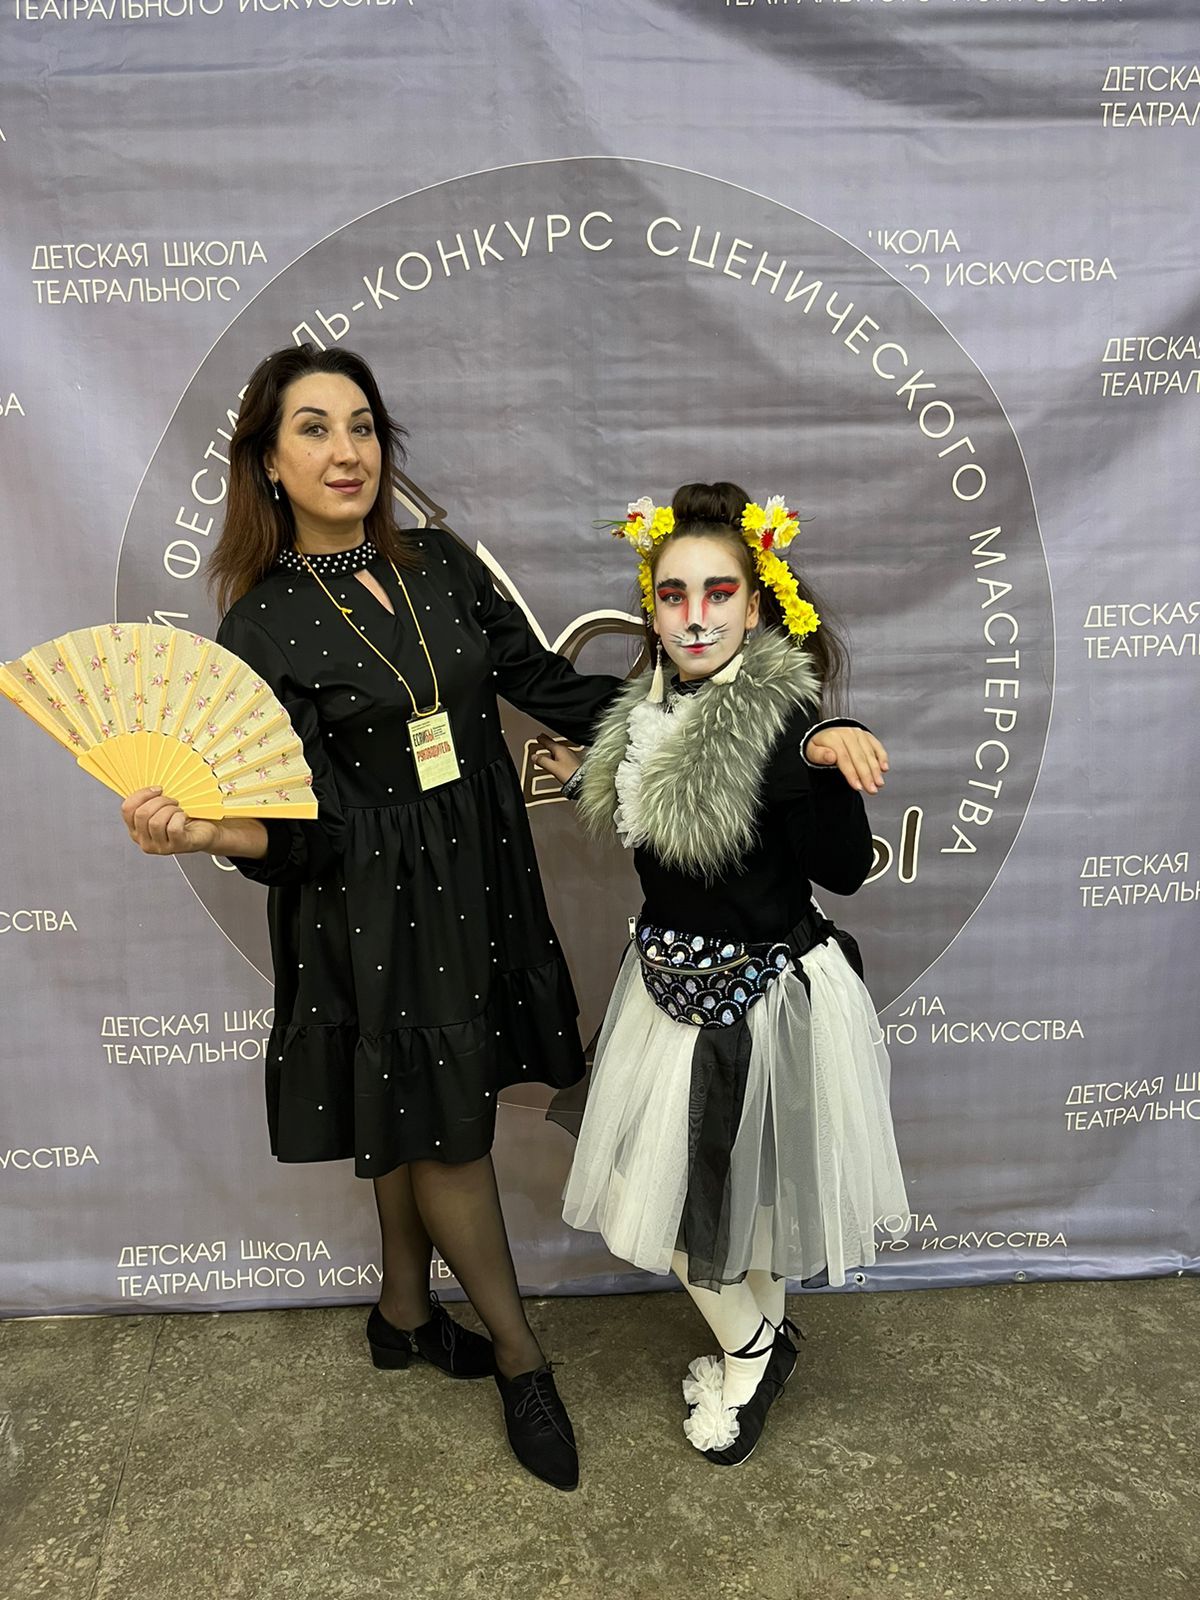 Юные артисты Азнакаево одерживают победу за победой